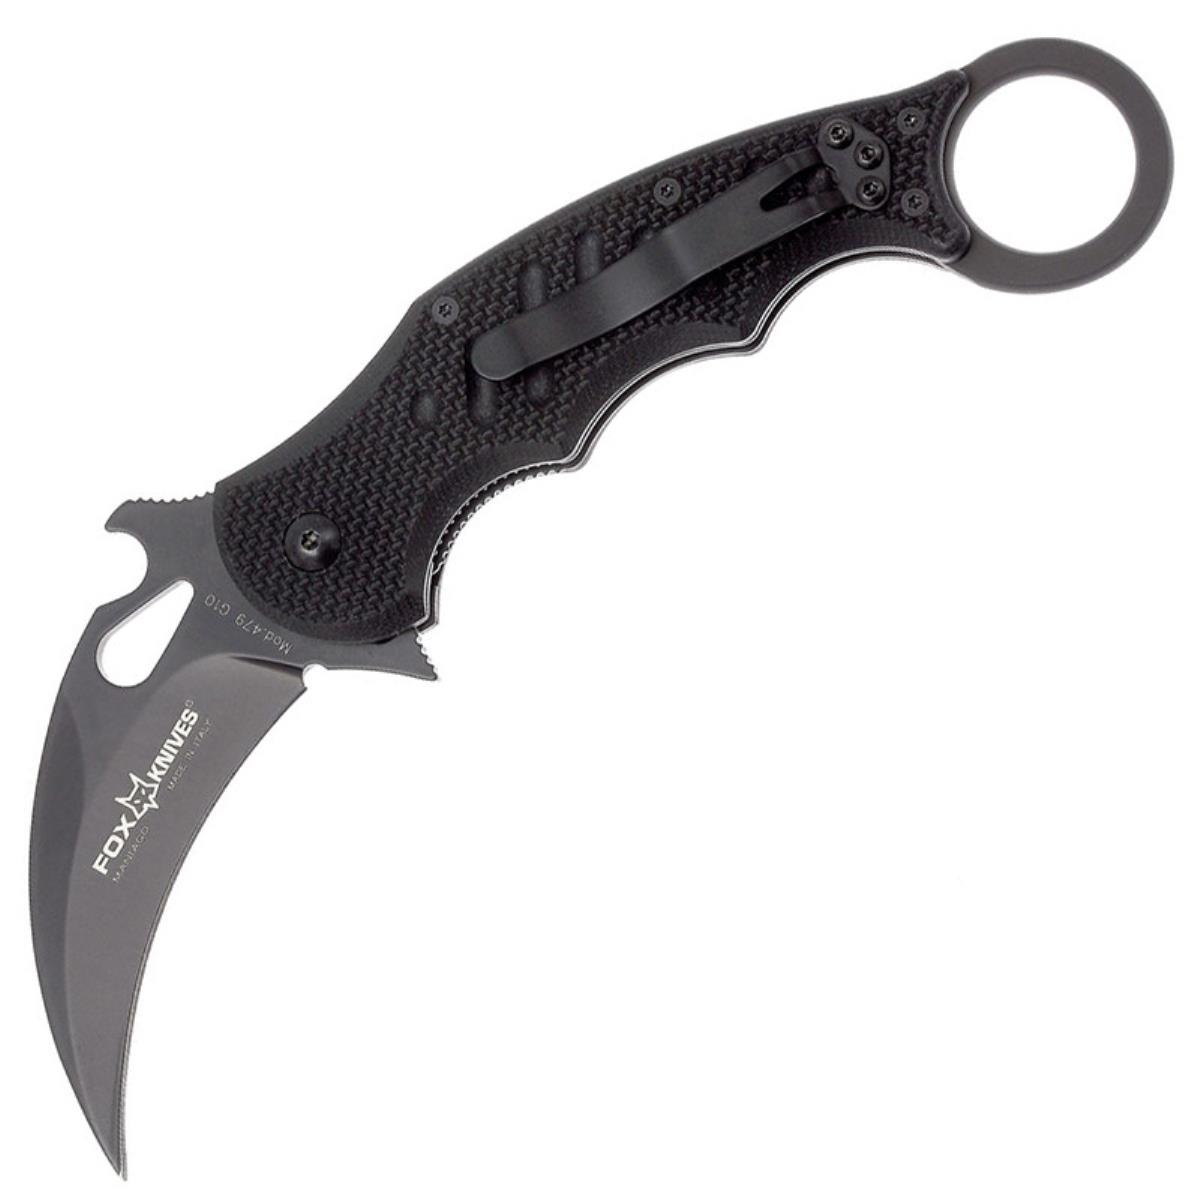 Нож модель F479 KARAMBIT FOX Knives нож hiline склад рук ть алюминий g10 клинок d2 b0263gys buck buck knives